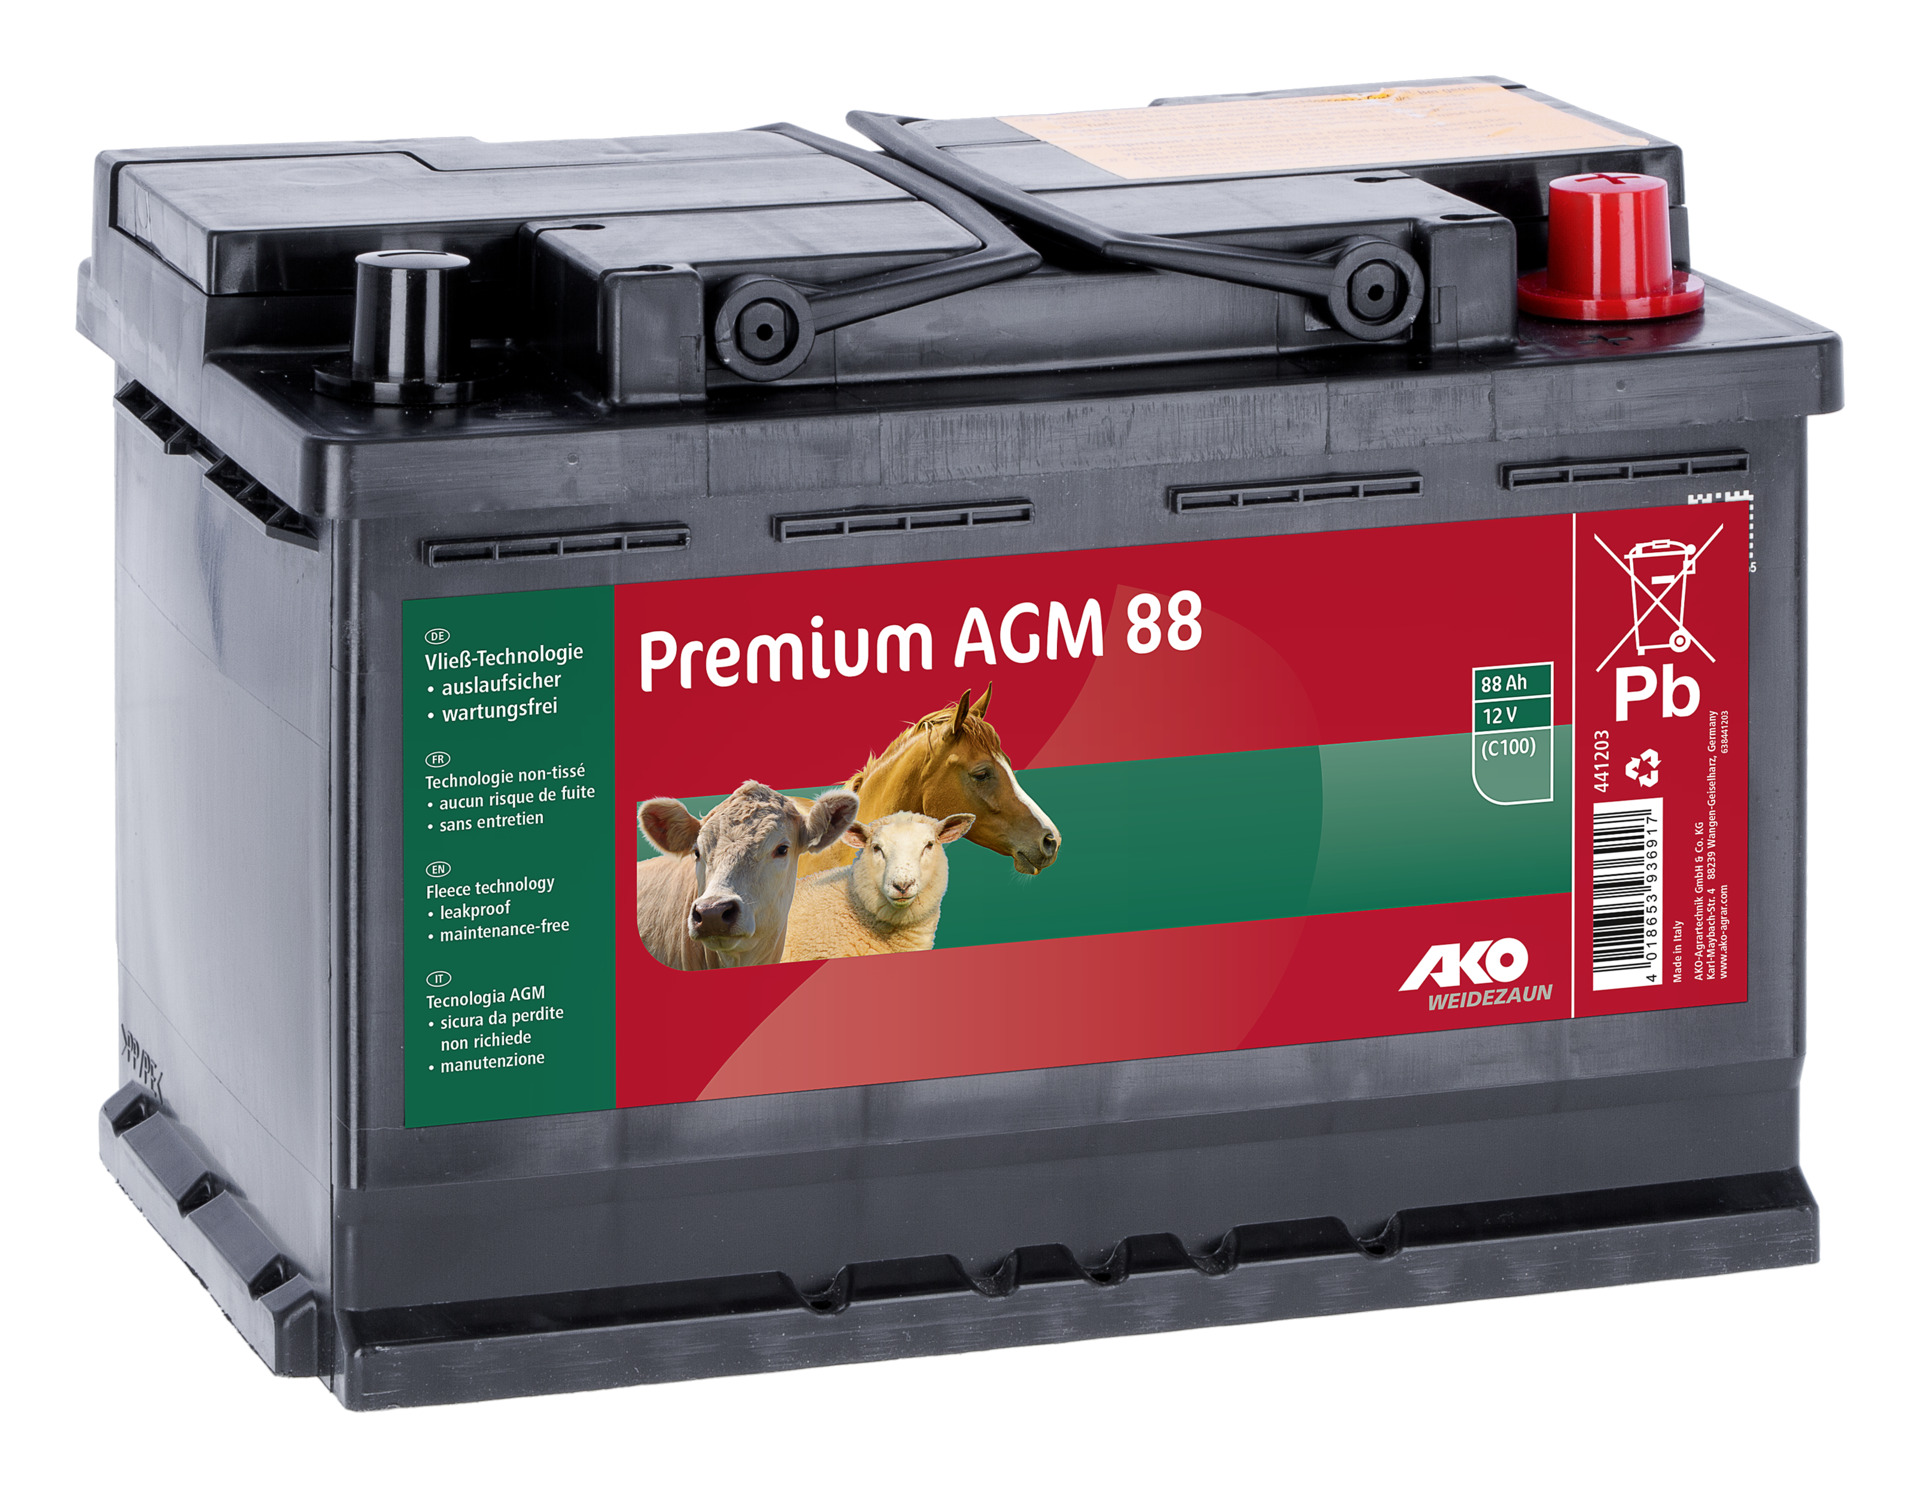 Kerbl AKO Premium AGM Batterie 88 AH